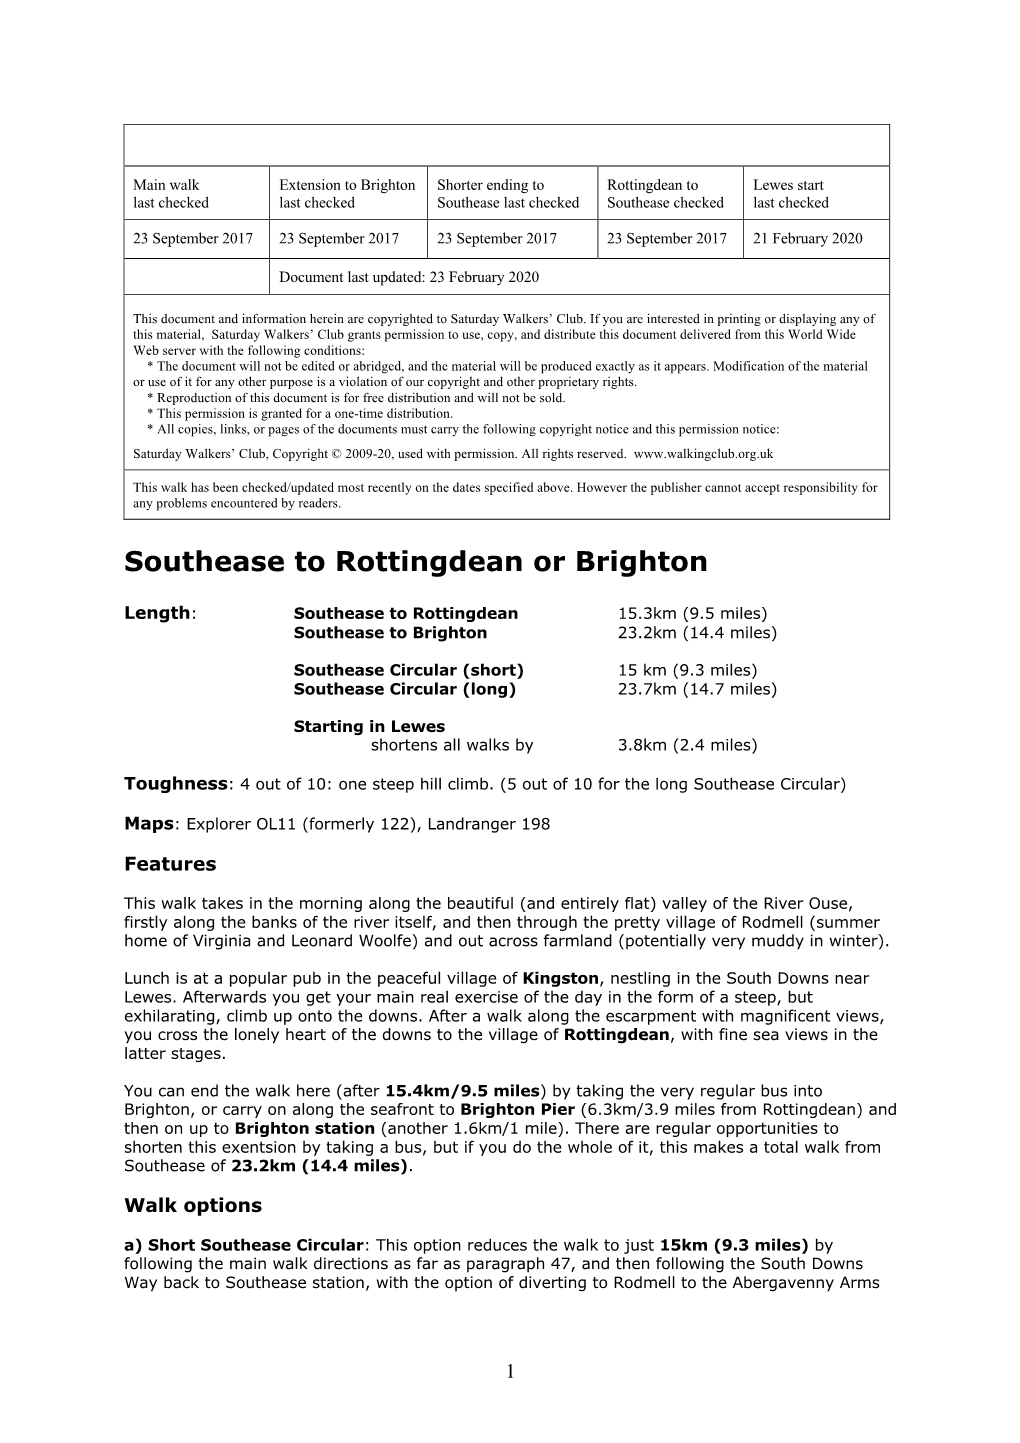 Southease to Rottingdean Or Brighton